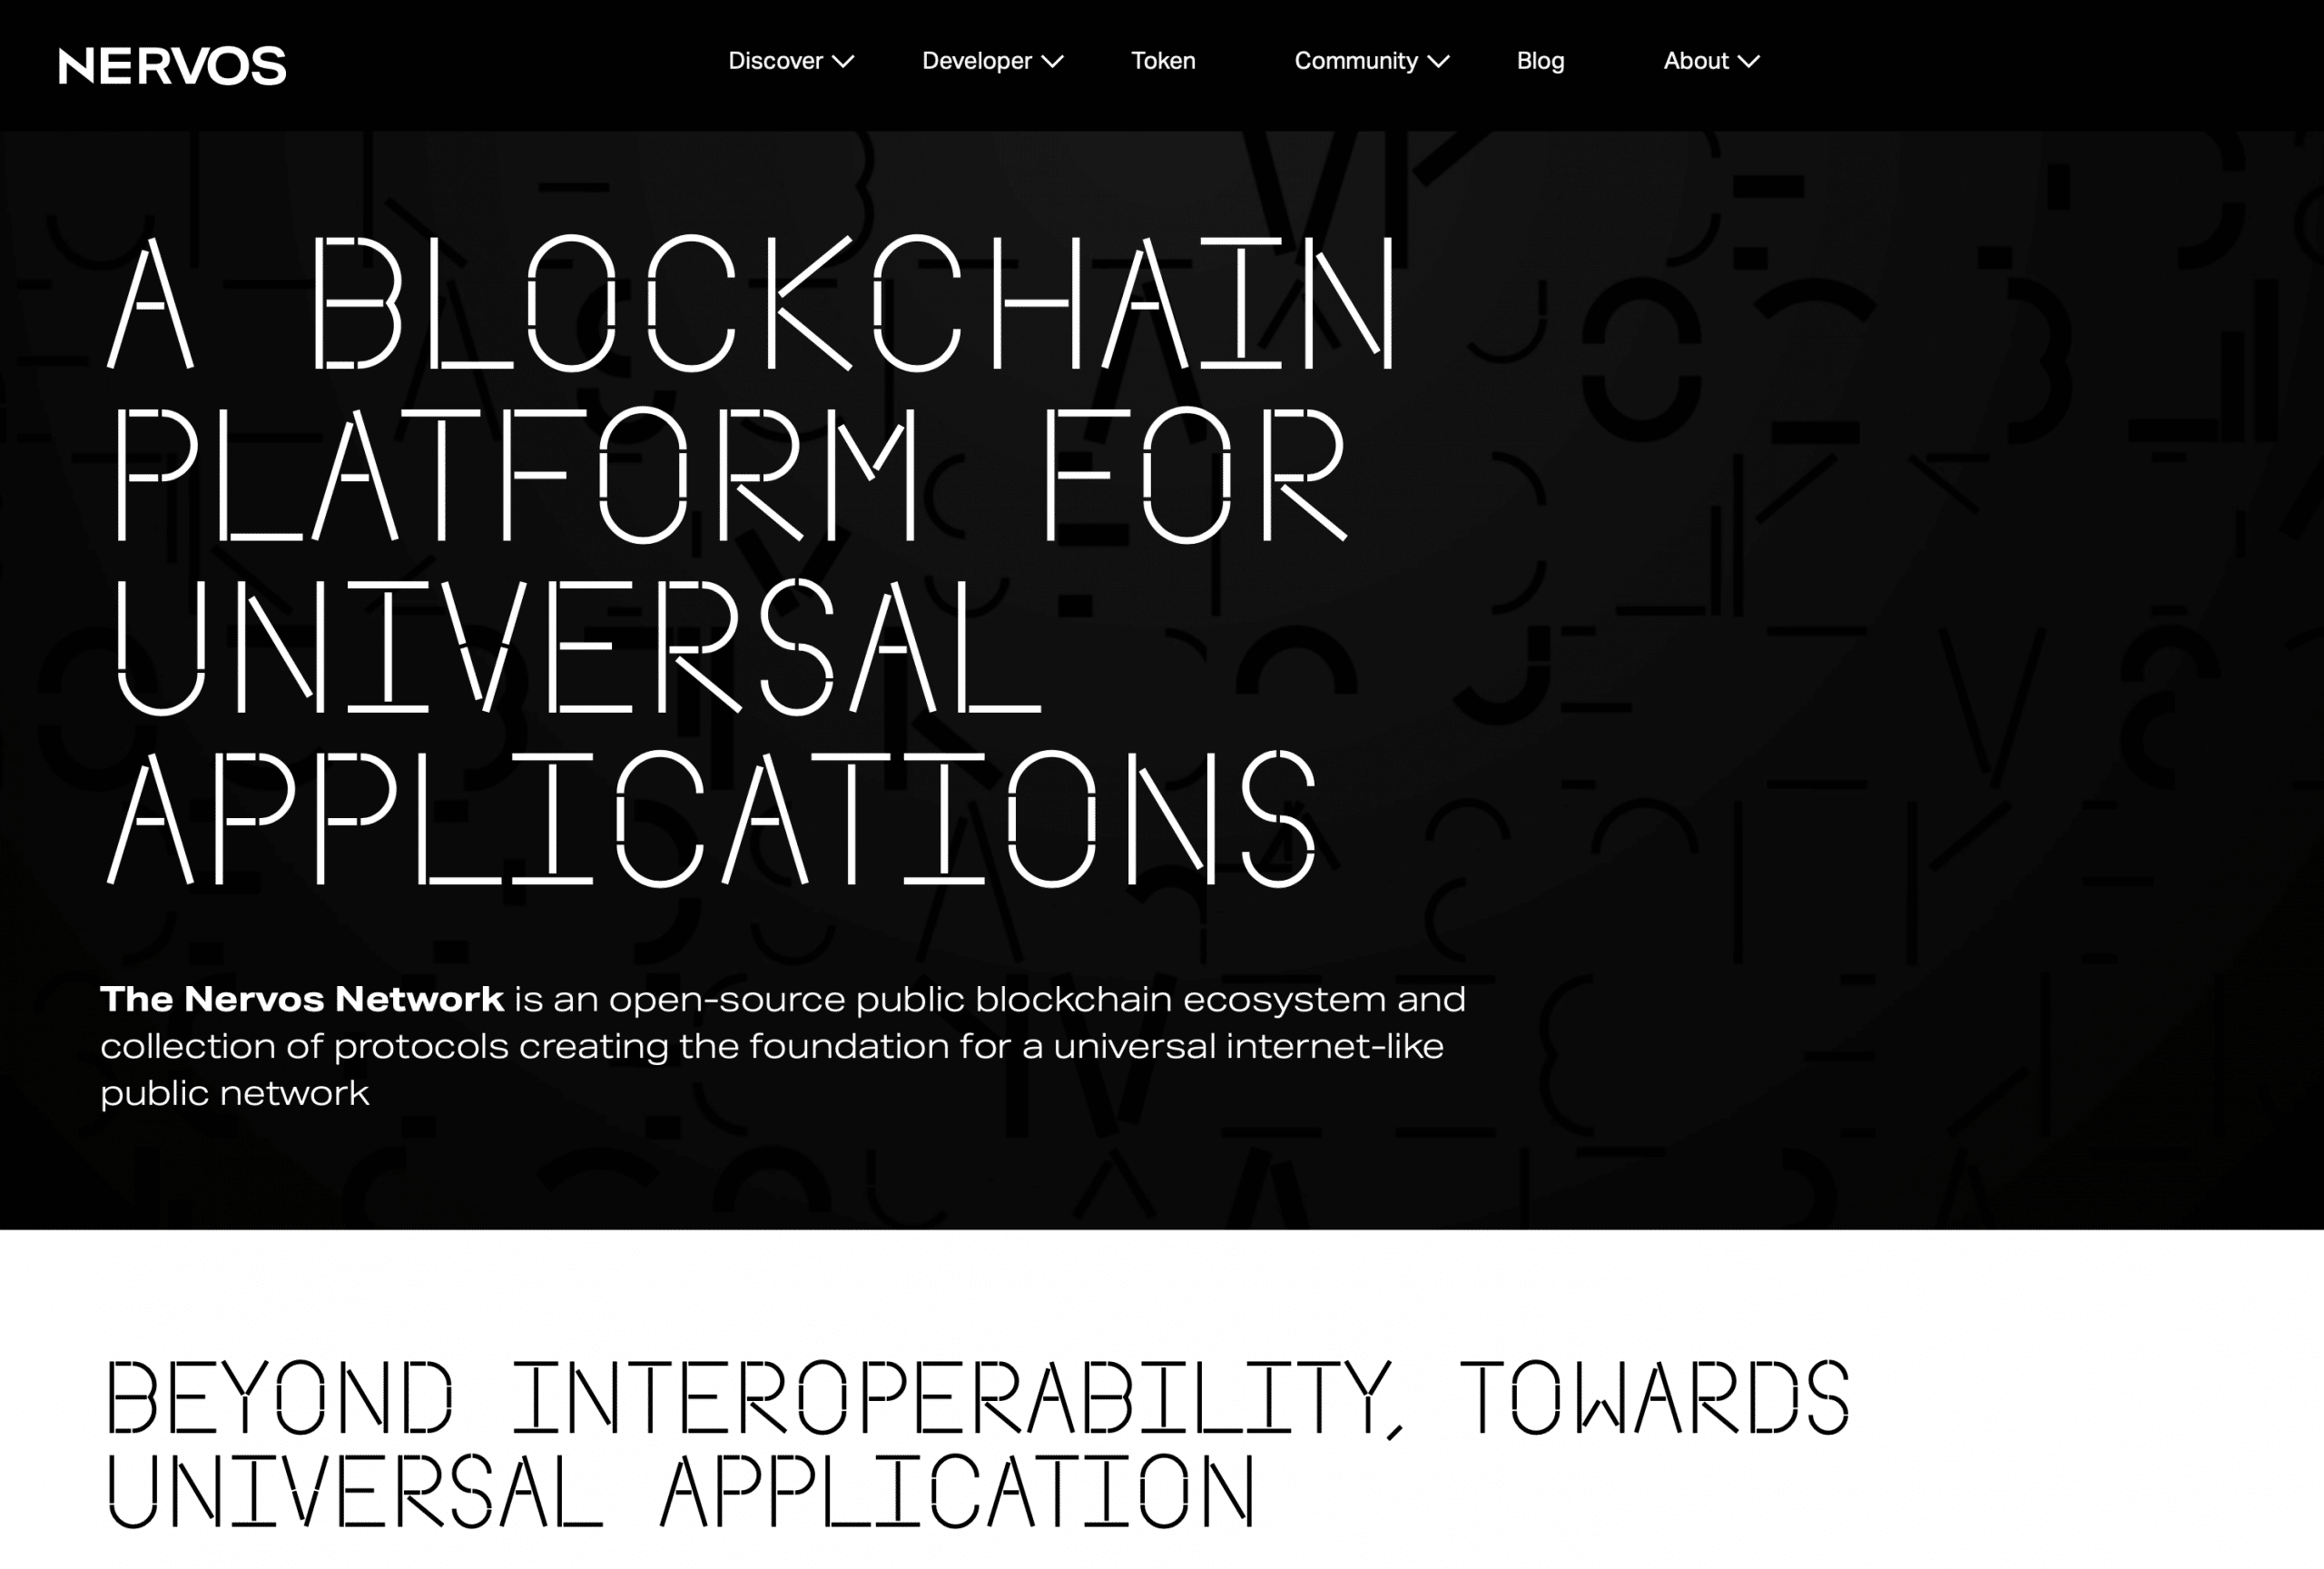 The Nervos blockchain website